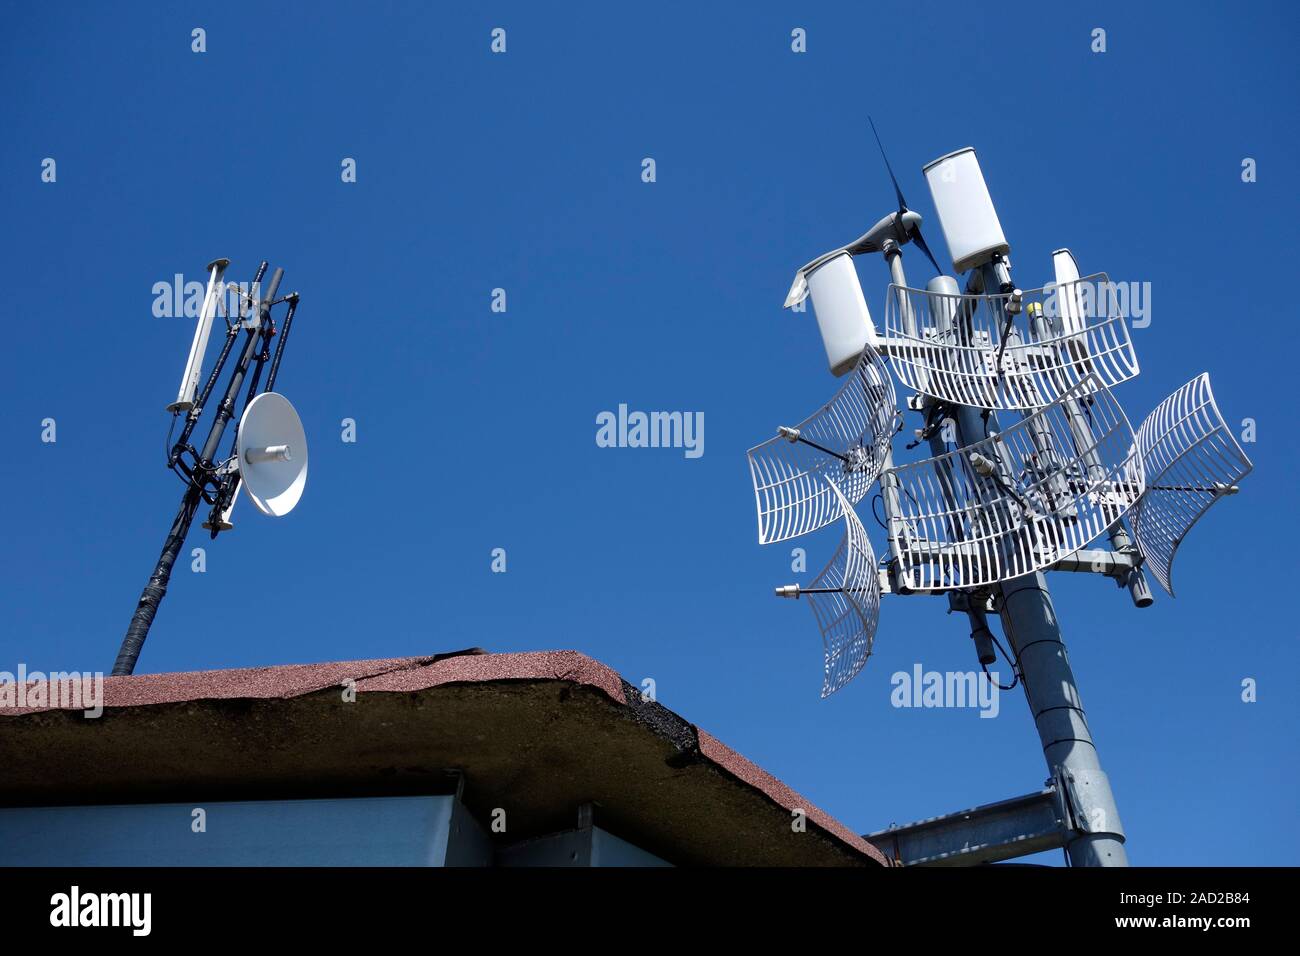 Antenas WiFi de largo alcance. WiFi (o Wi-Fi) es un equipo inalámbrico de  red de área local, la tecnología que permite a dispositivos electrónicos a  la red utilizando radi Fotografía de stock 